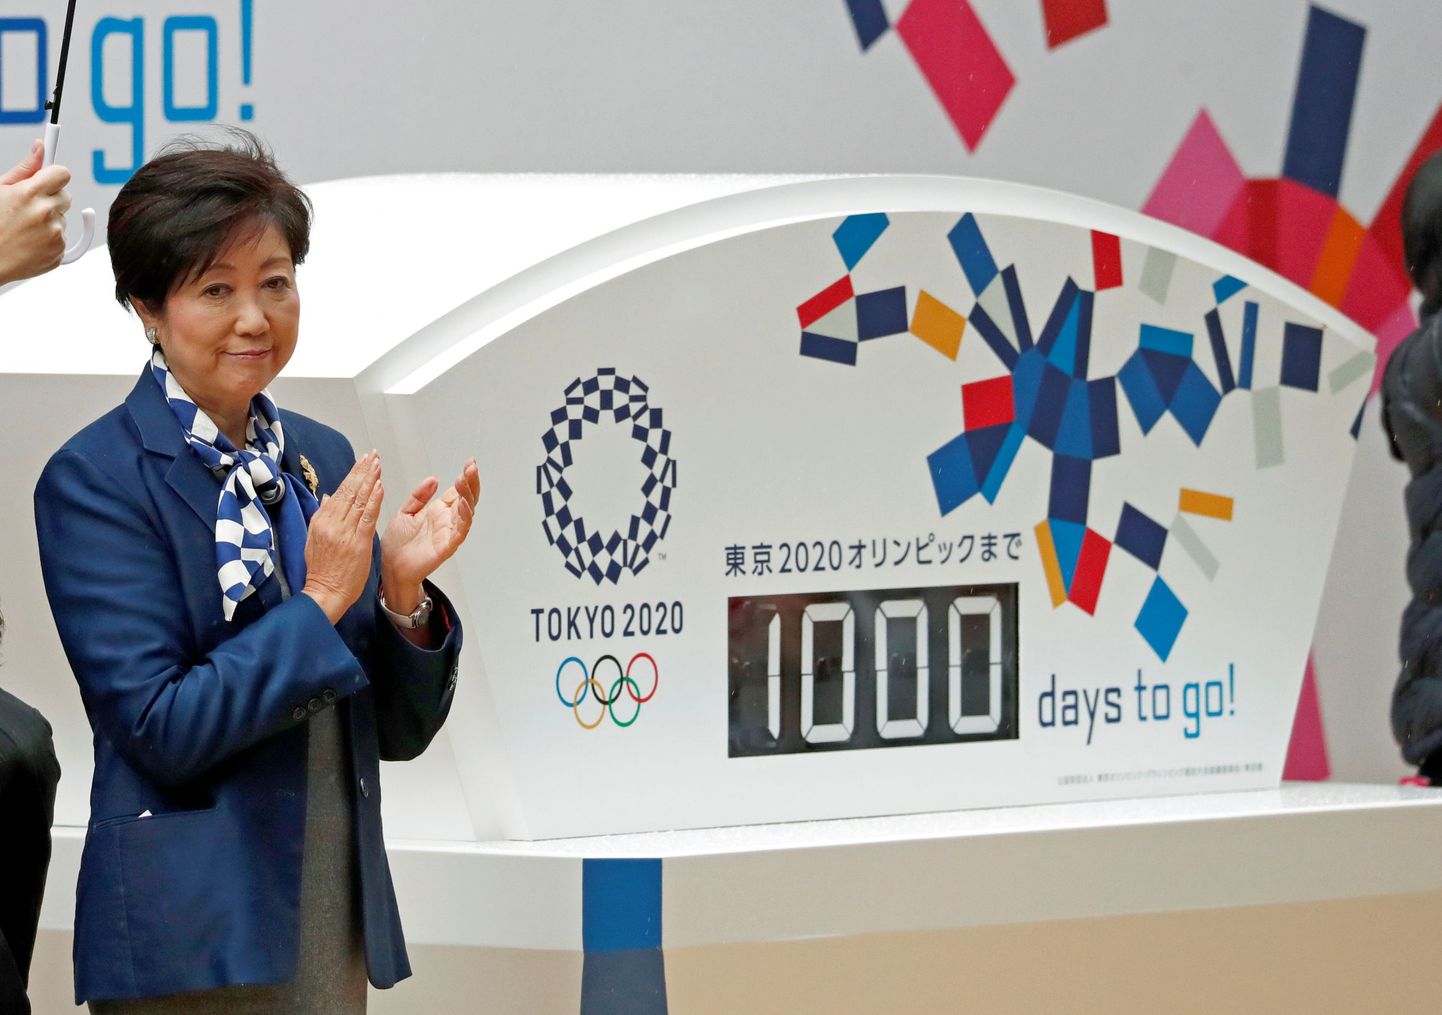 Tokyo kuberner Yuriko Koike avas eile kella, mis hakkas lugema aega 2020 olümpiamängude avatseremooniani. Tänaseks on see number langenud 999 päeva peale.